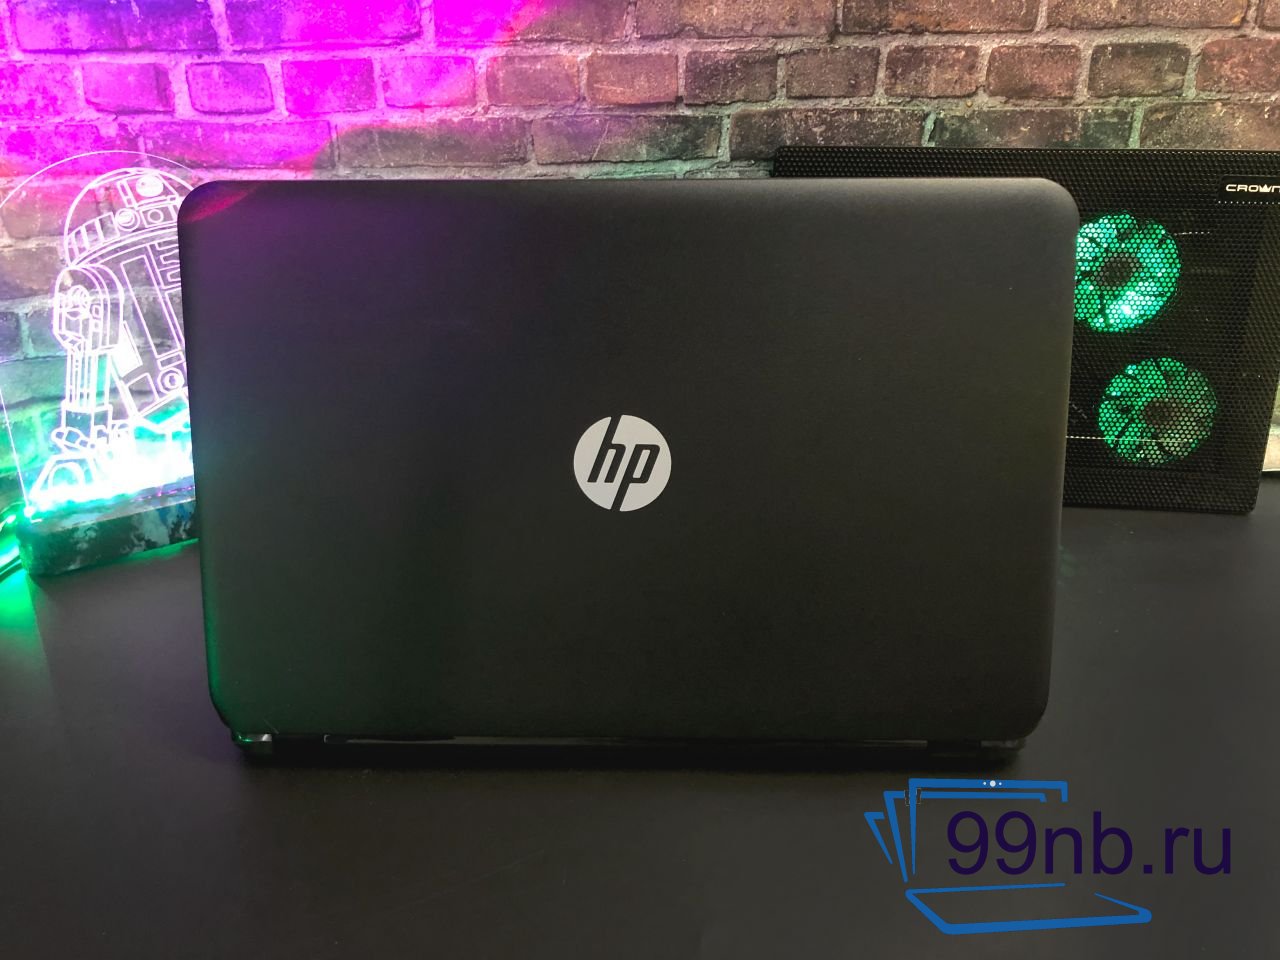  Ноутбук HP для работы и игр